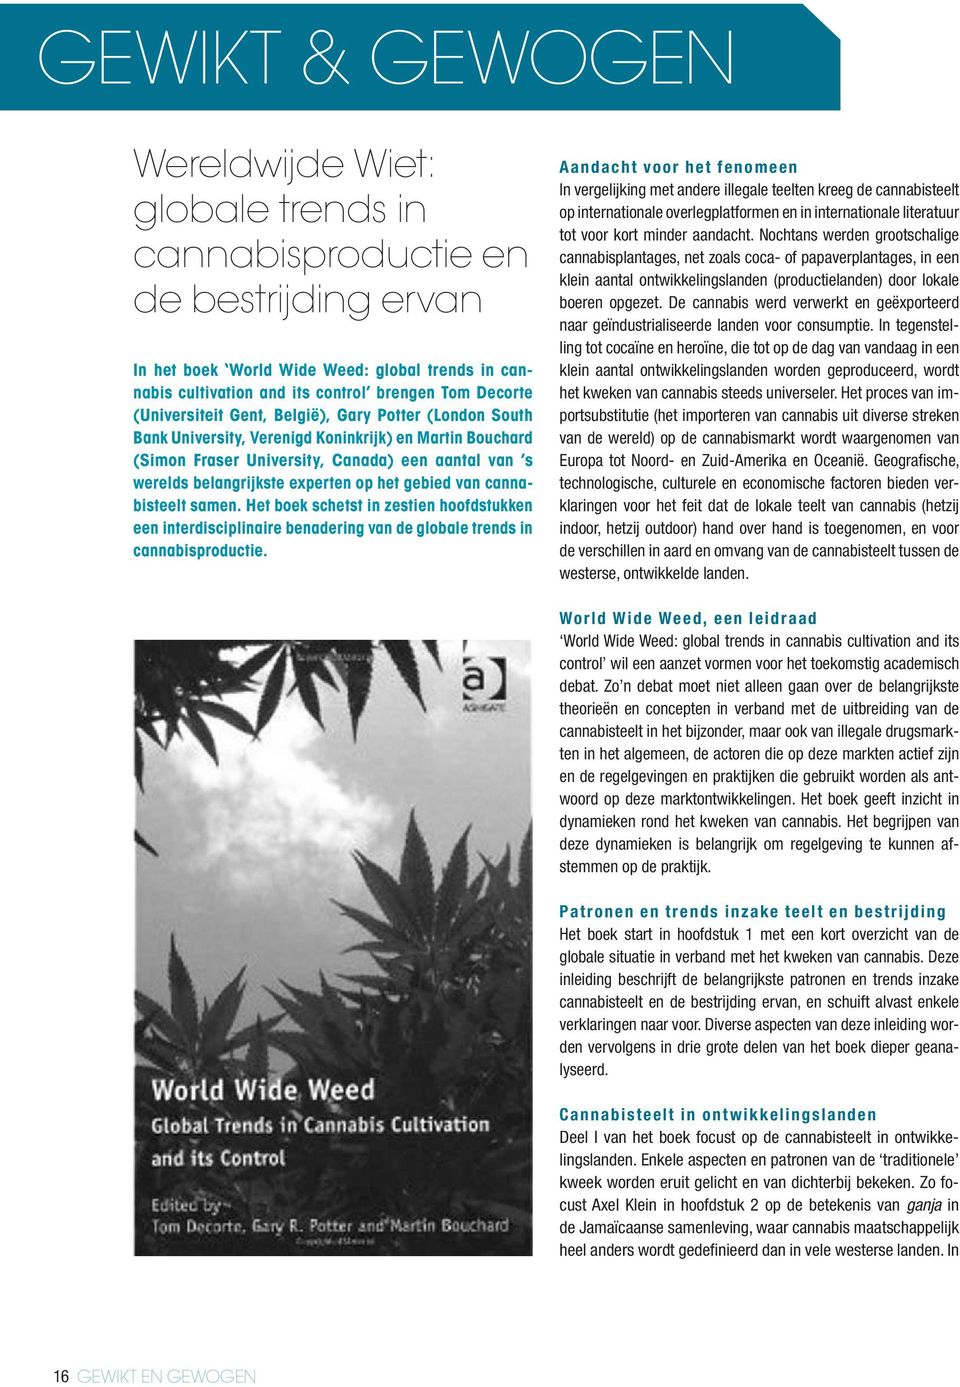 het gebied van cannabisteelt samen. Het boek schetst in zestien hoofdstukken een interdisciplinaire benadering van de globale trends in cannabisproductie.